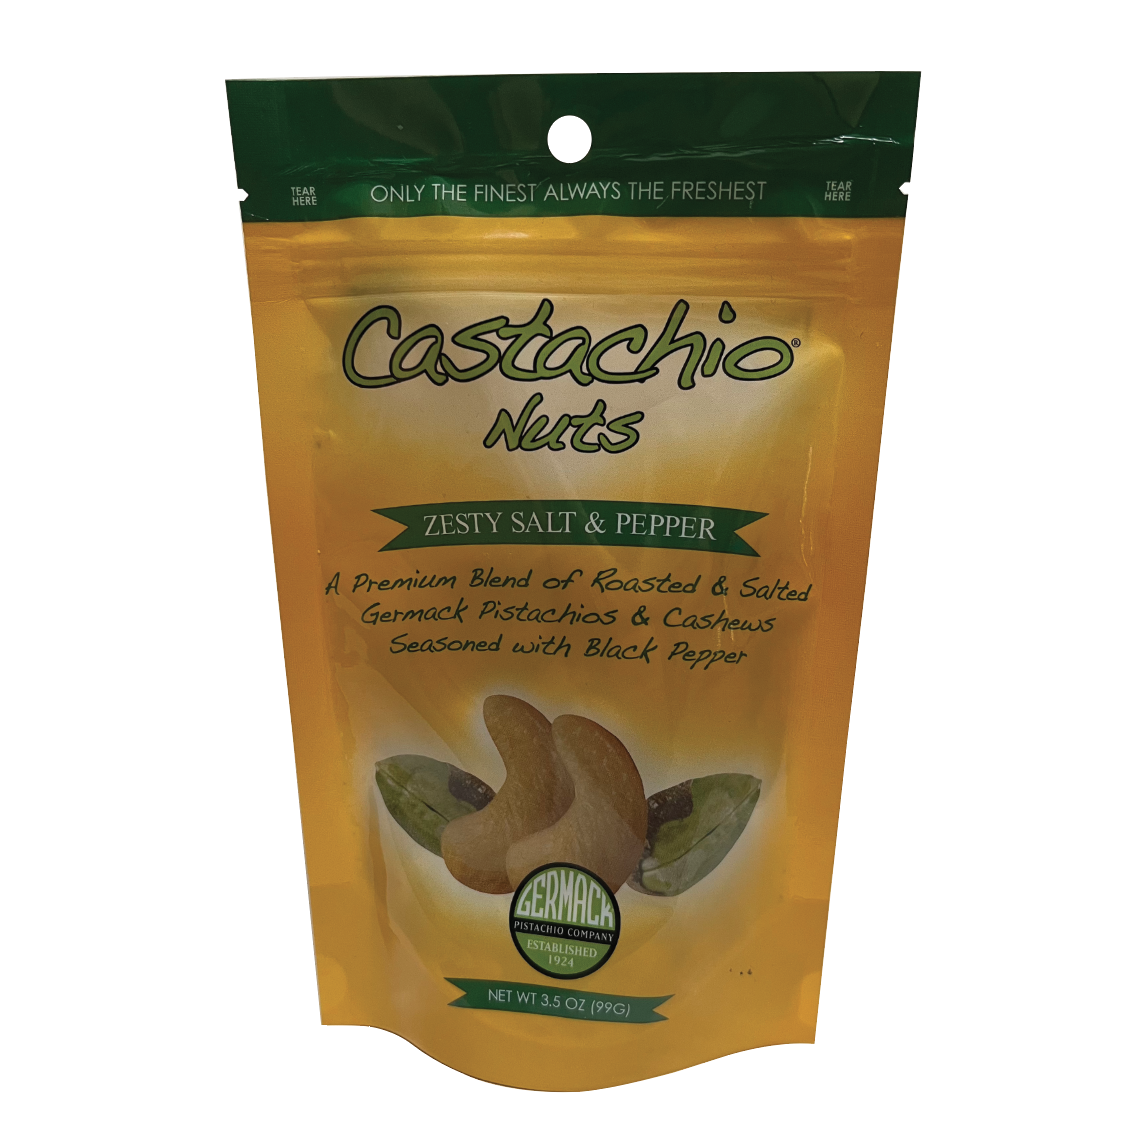 Picture Castachio Nuts - Zesty Salt & Pepper Pistachios & Cashews  3.5 OZ.  C12